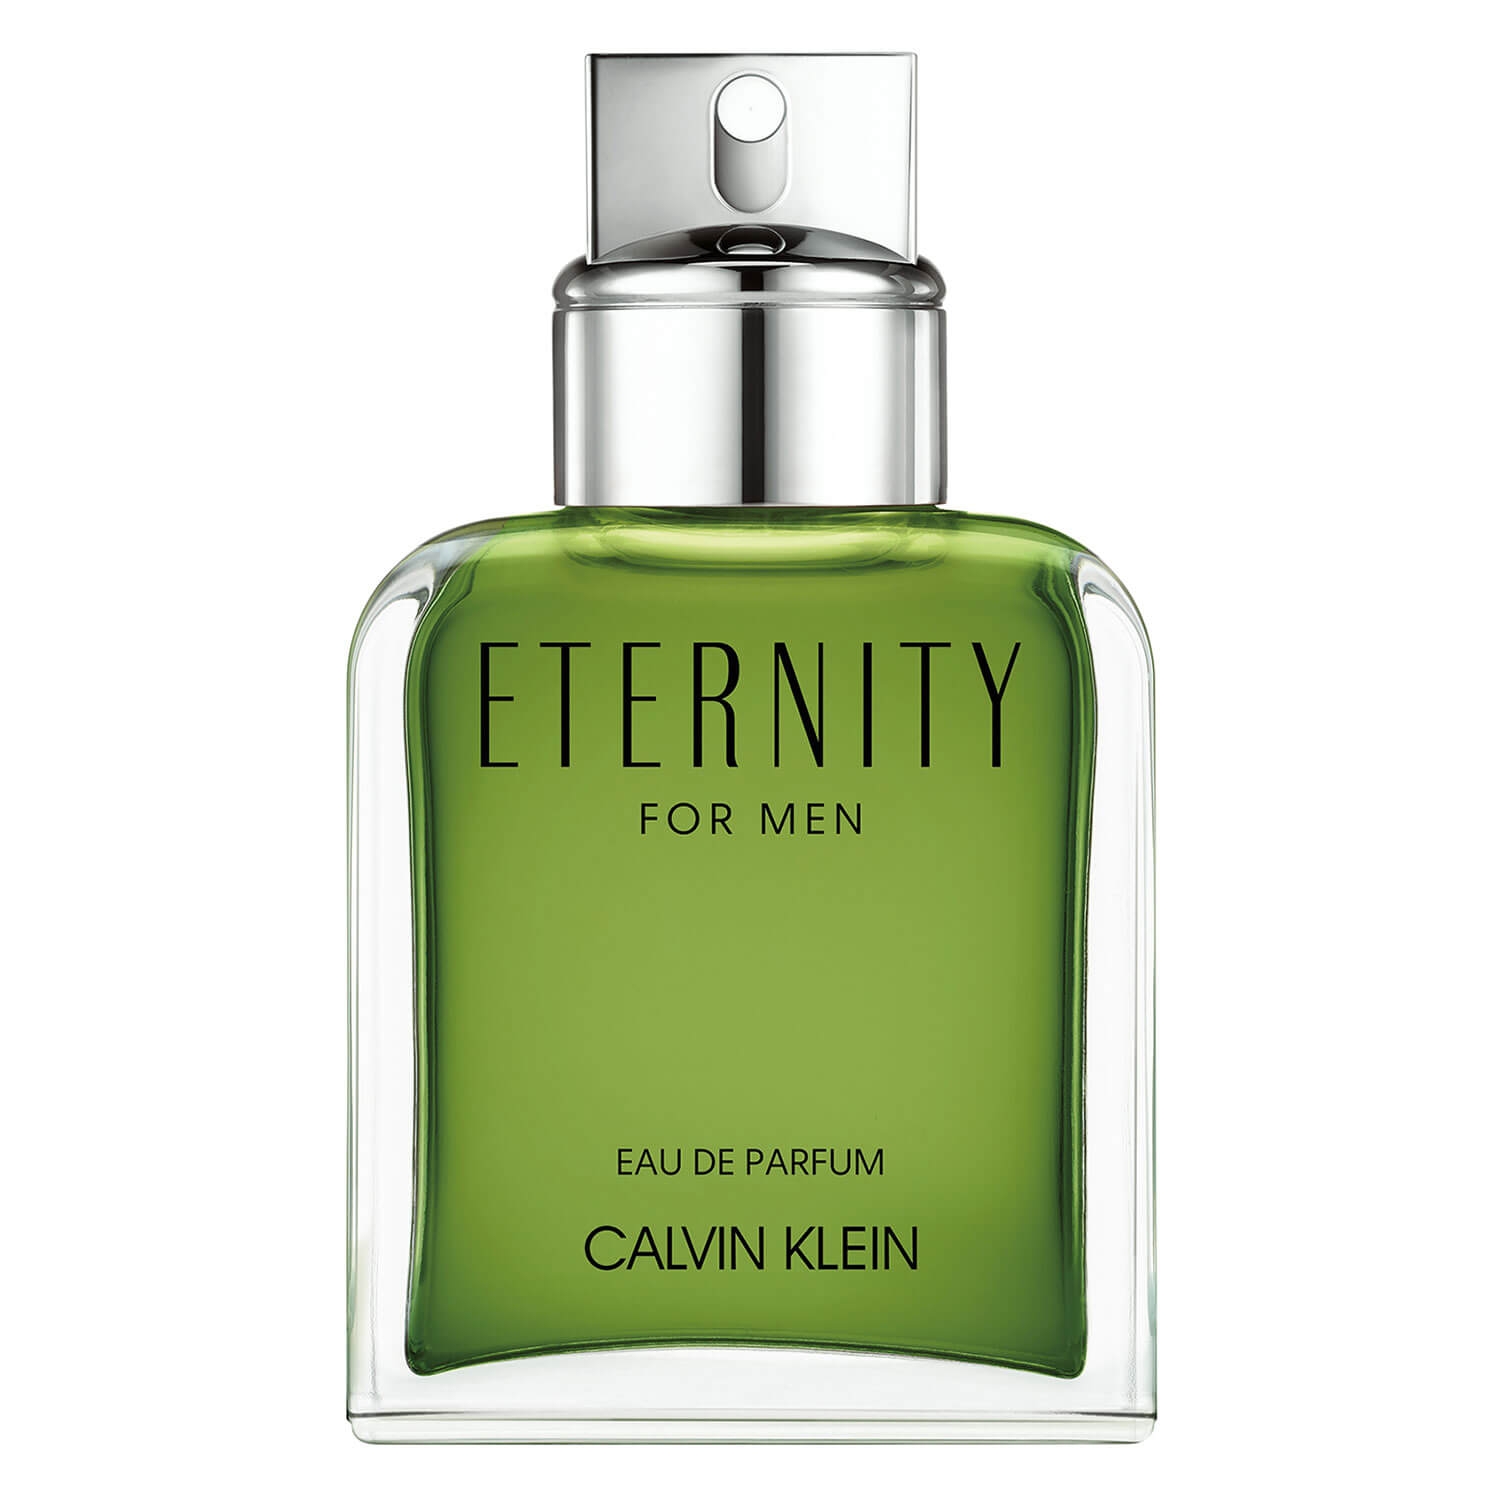 Produktbild von Eternity - Male Eau de Parfum